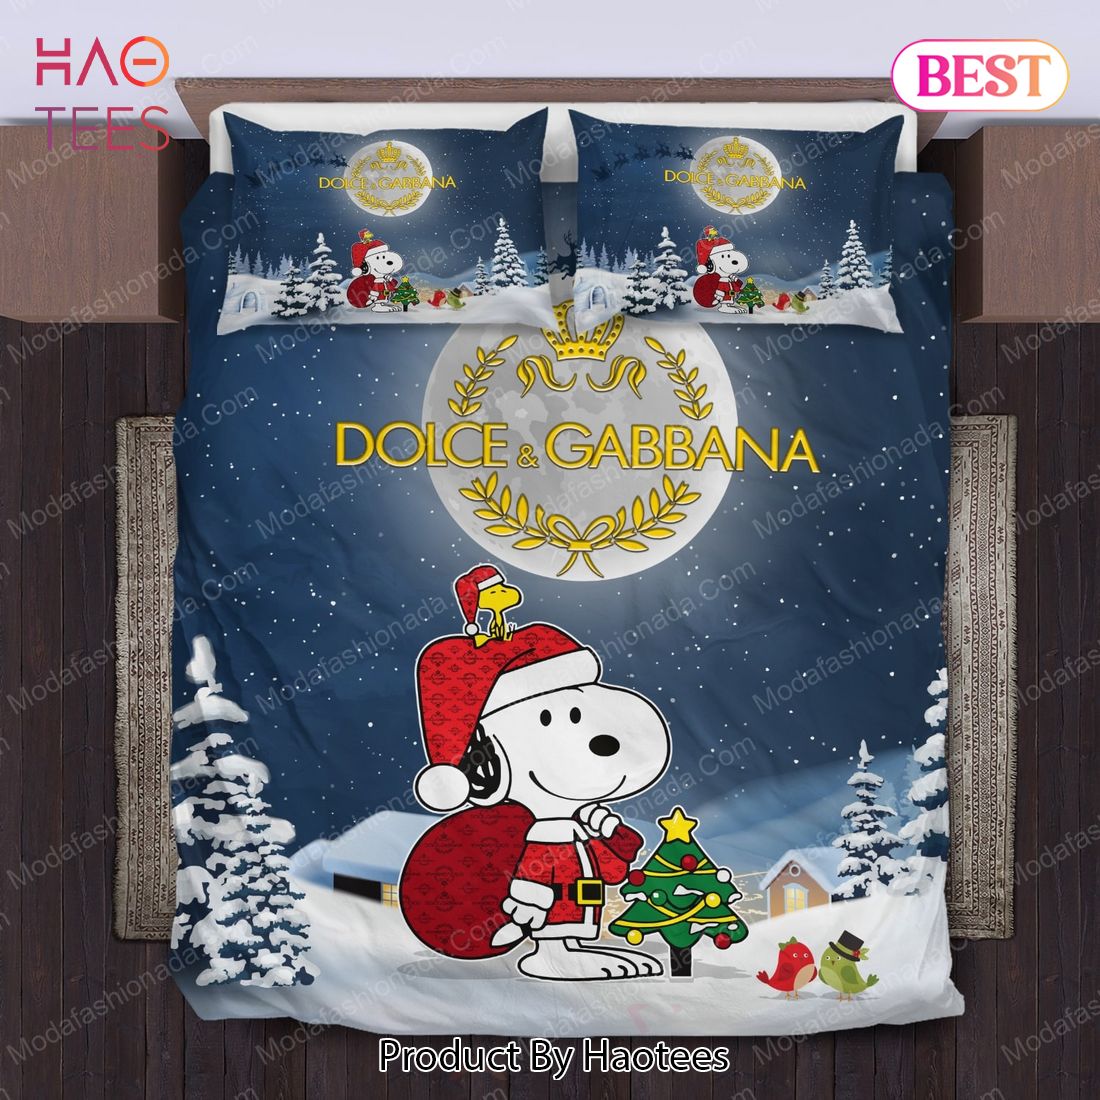 Buy Snoopy Dog Dolce & Gabbana Merry Christmas Bedding Sets Bed Sets, Bedroom Sets, Comforter Sets, Duvet Cover, Bedspread